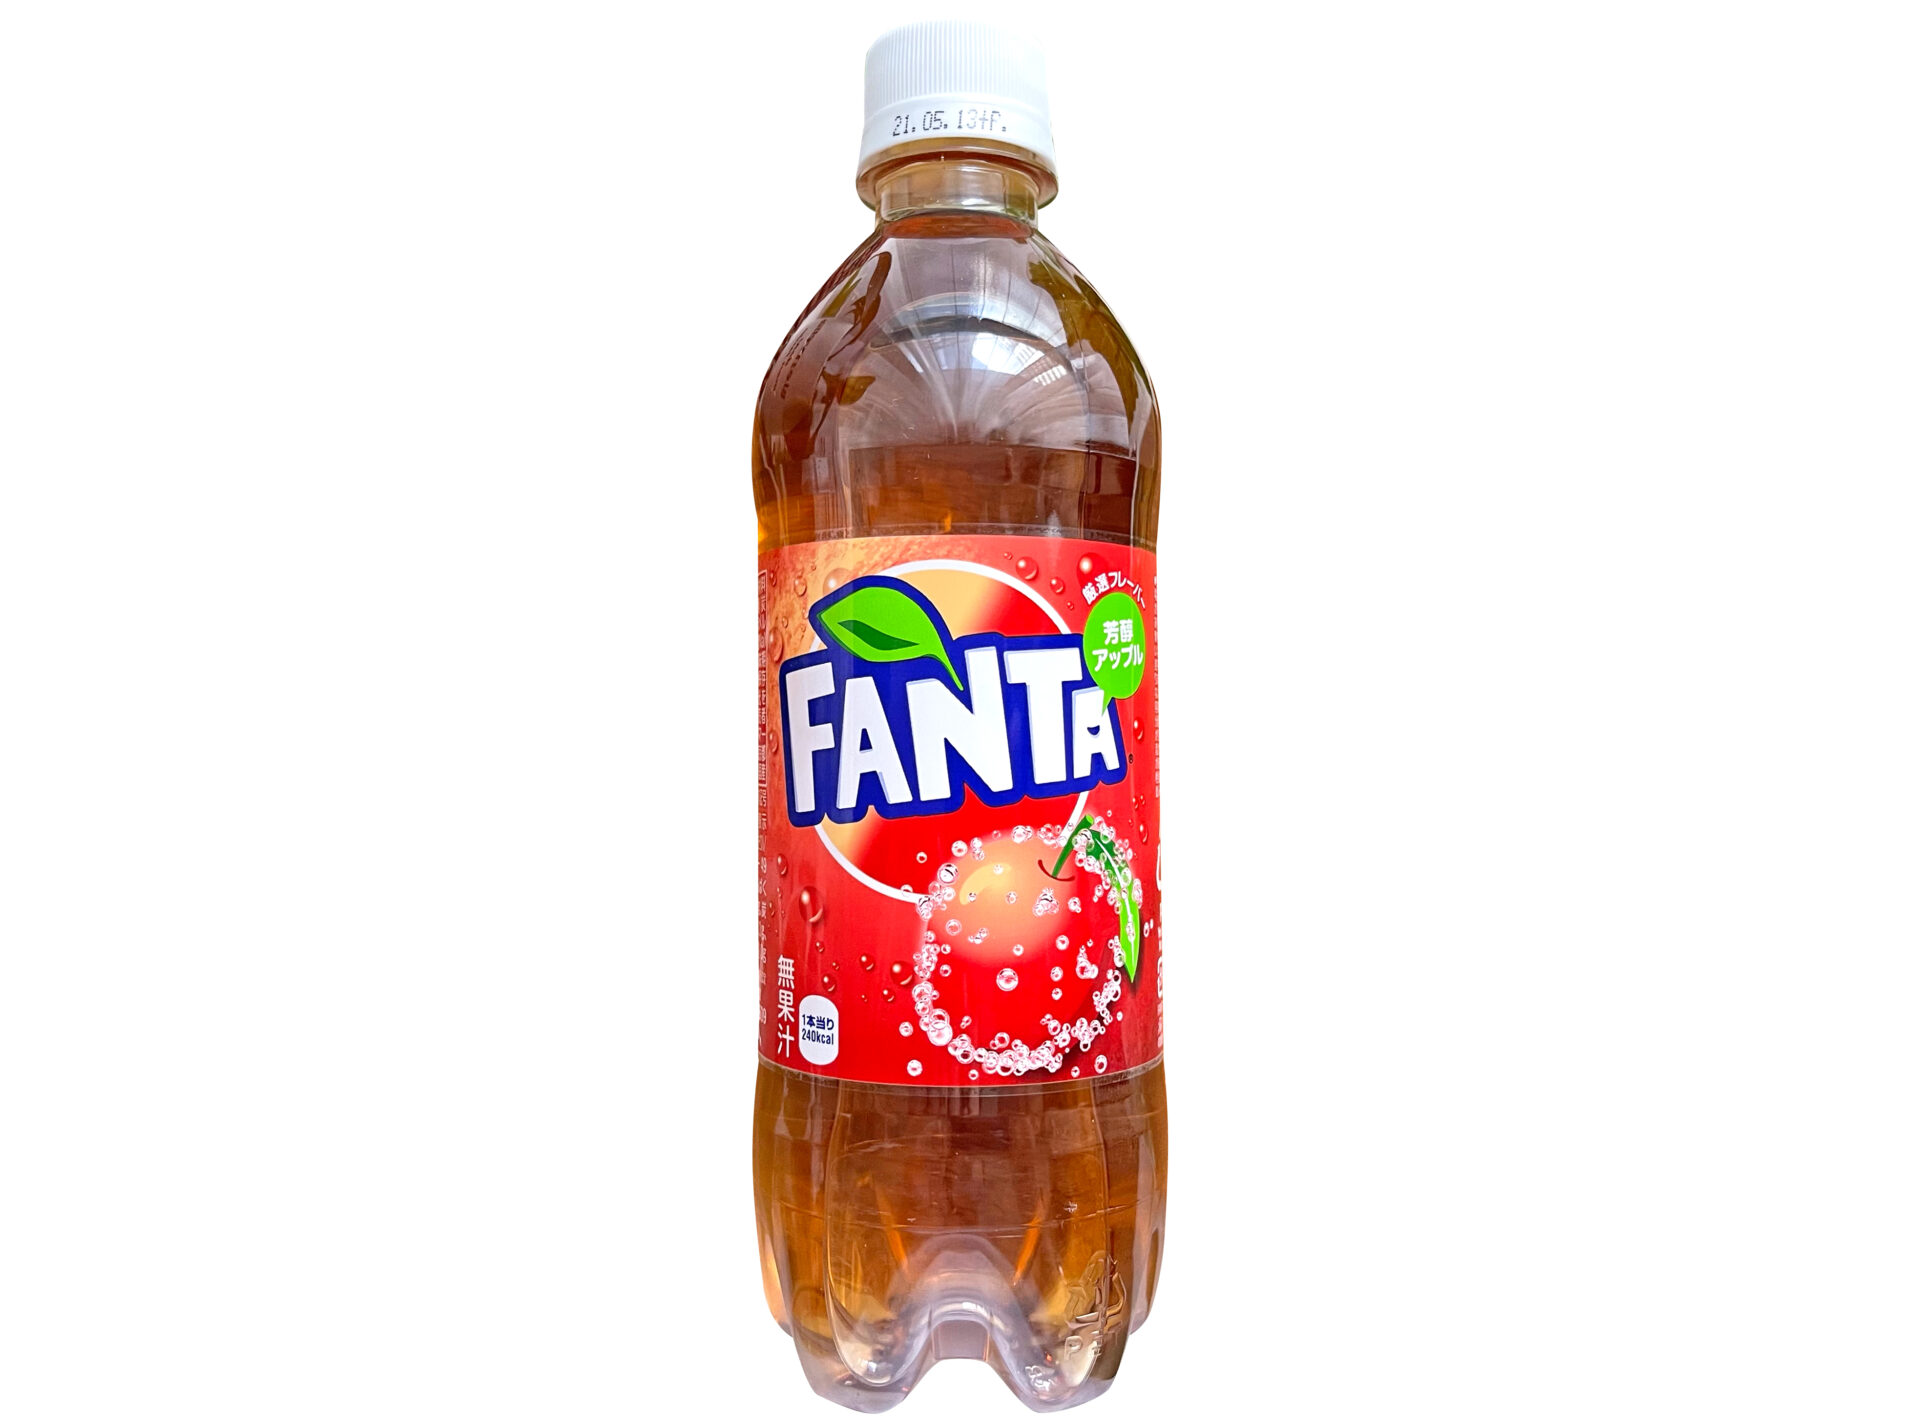 コカ・コーラ『ファンタ 厳選フレーバー芳醇アップル』